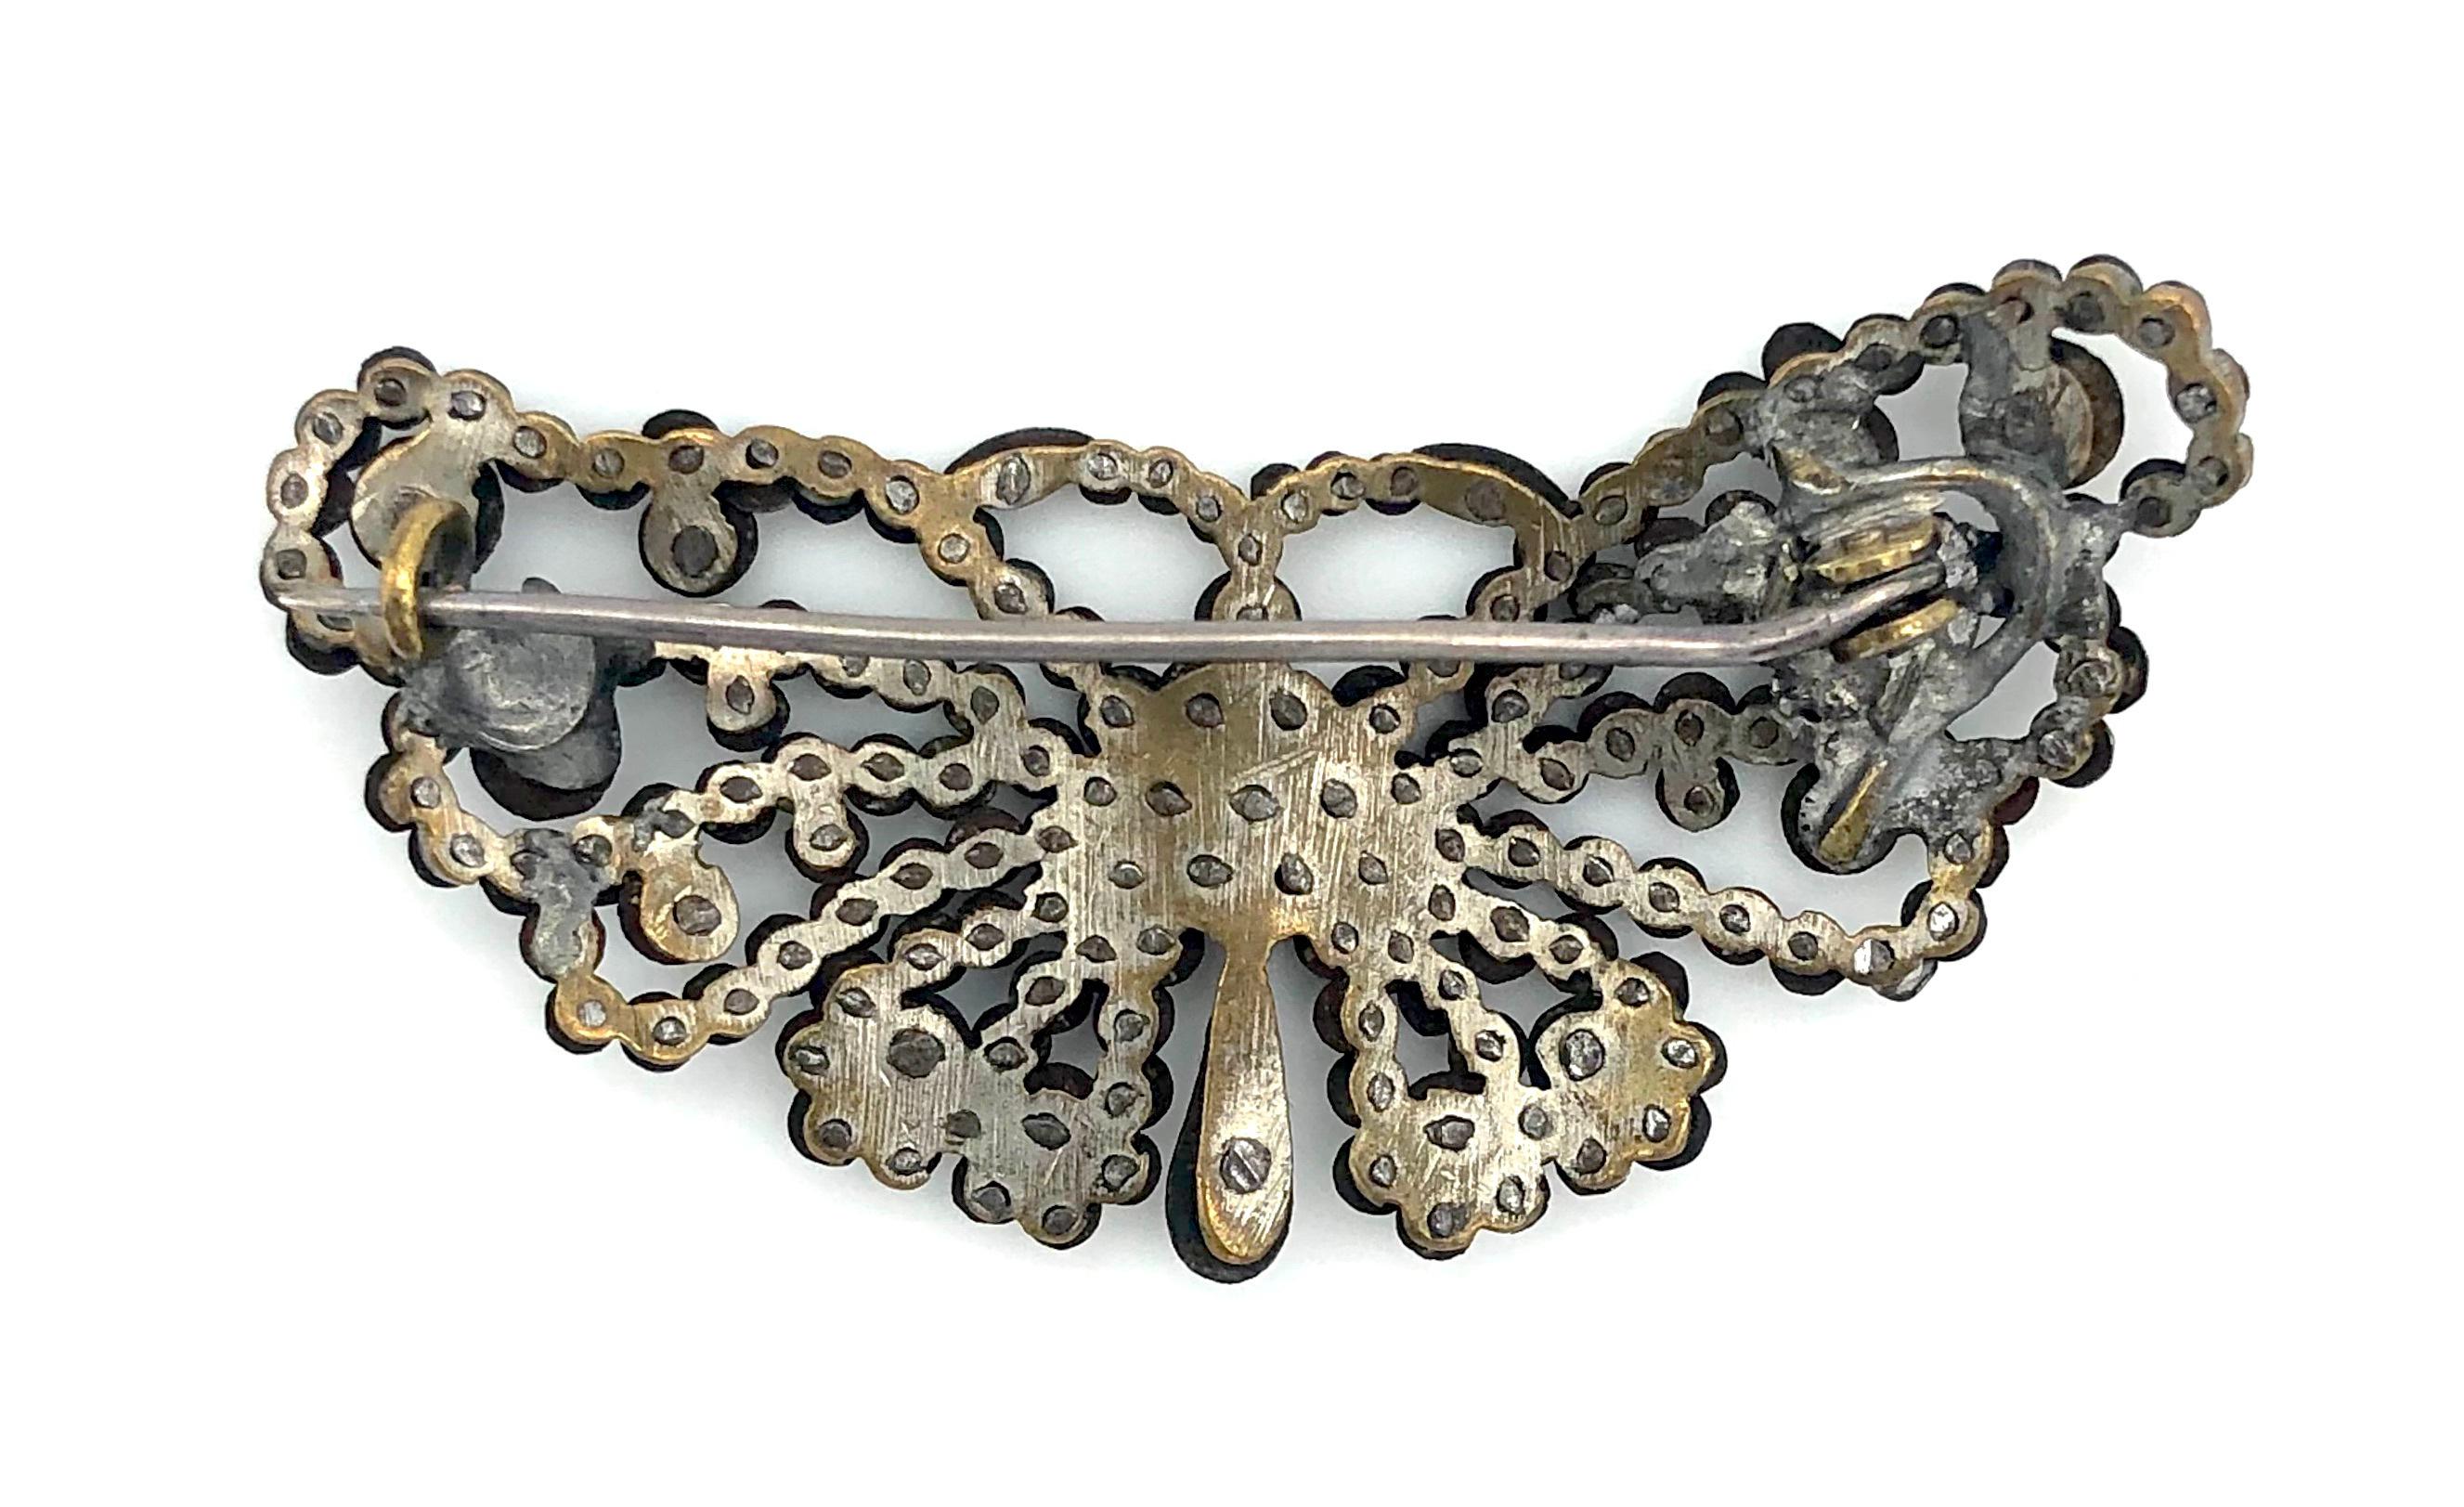 Cette charmante petite broche en forme de papillon a été fabriquée vers 1830 à partir de clous en acier poli rivetés sur une base en métal.